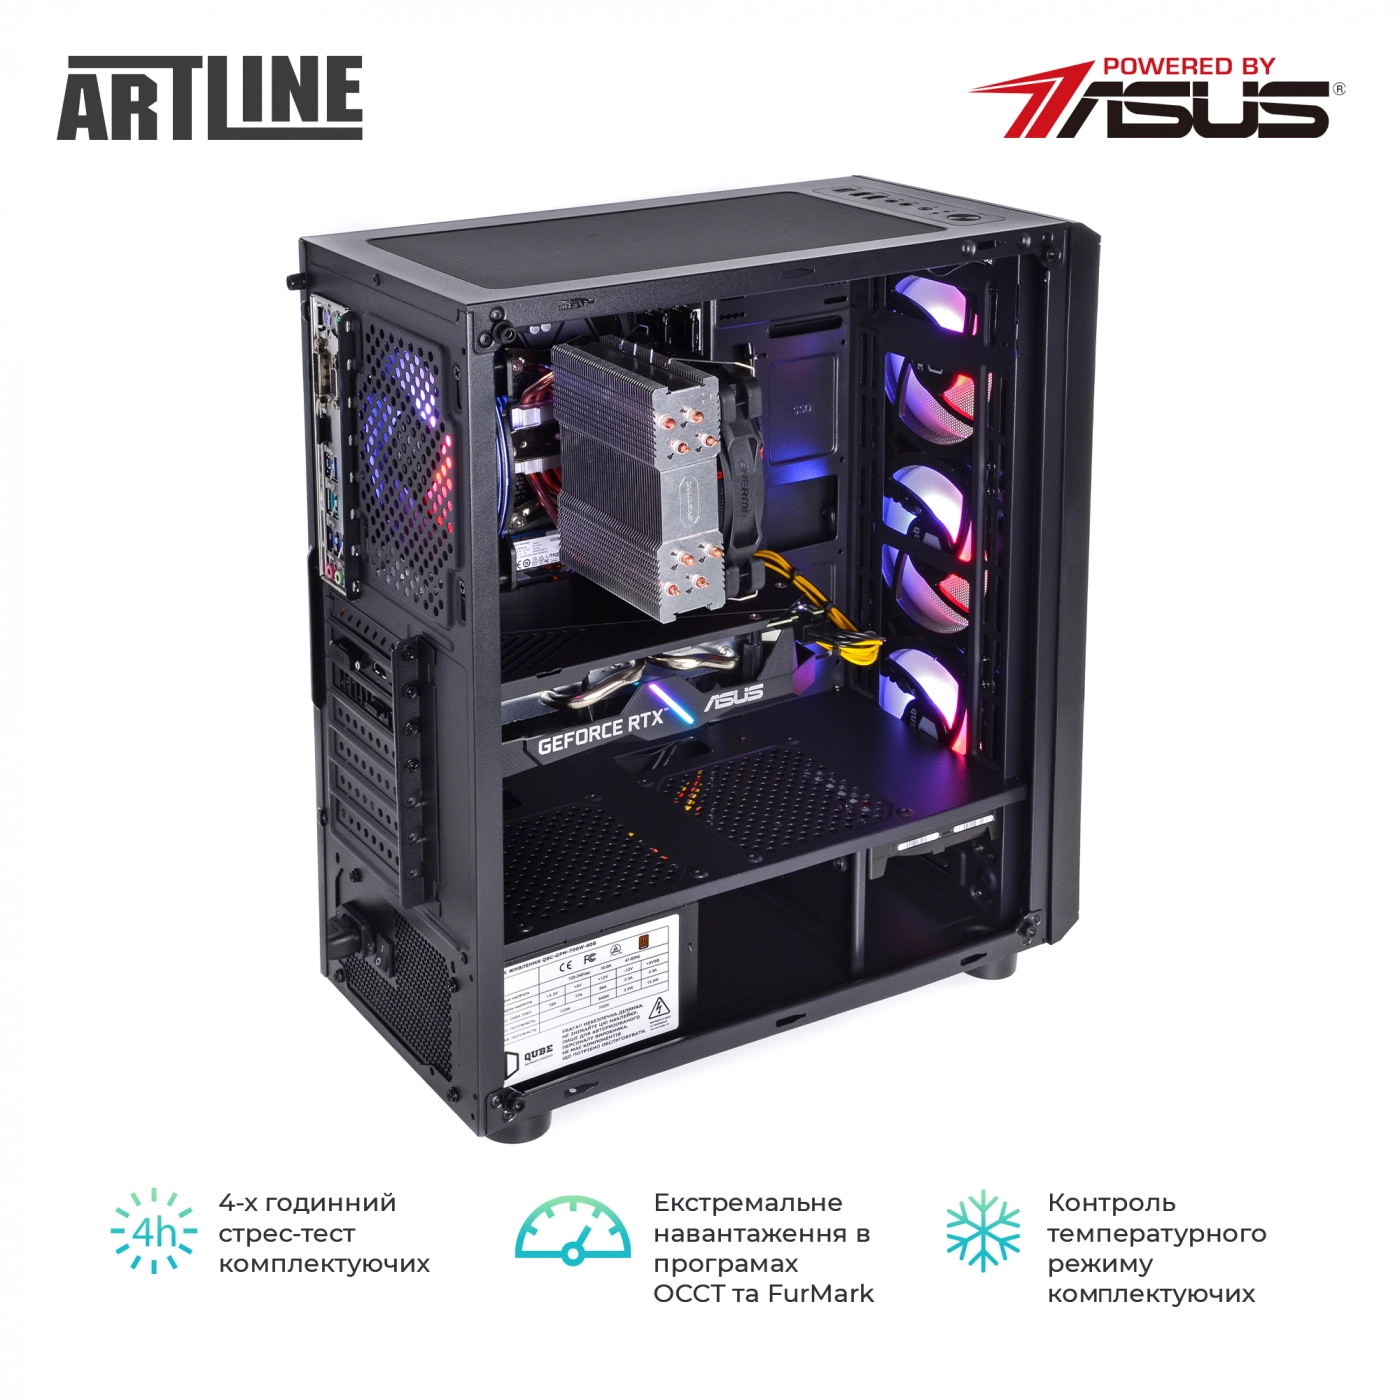 Купить Компьютер ARTLINE Gaming X65v35 - фото 8